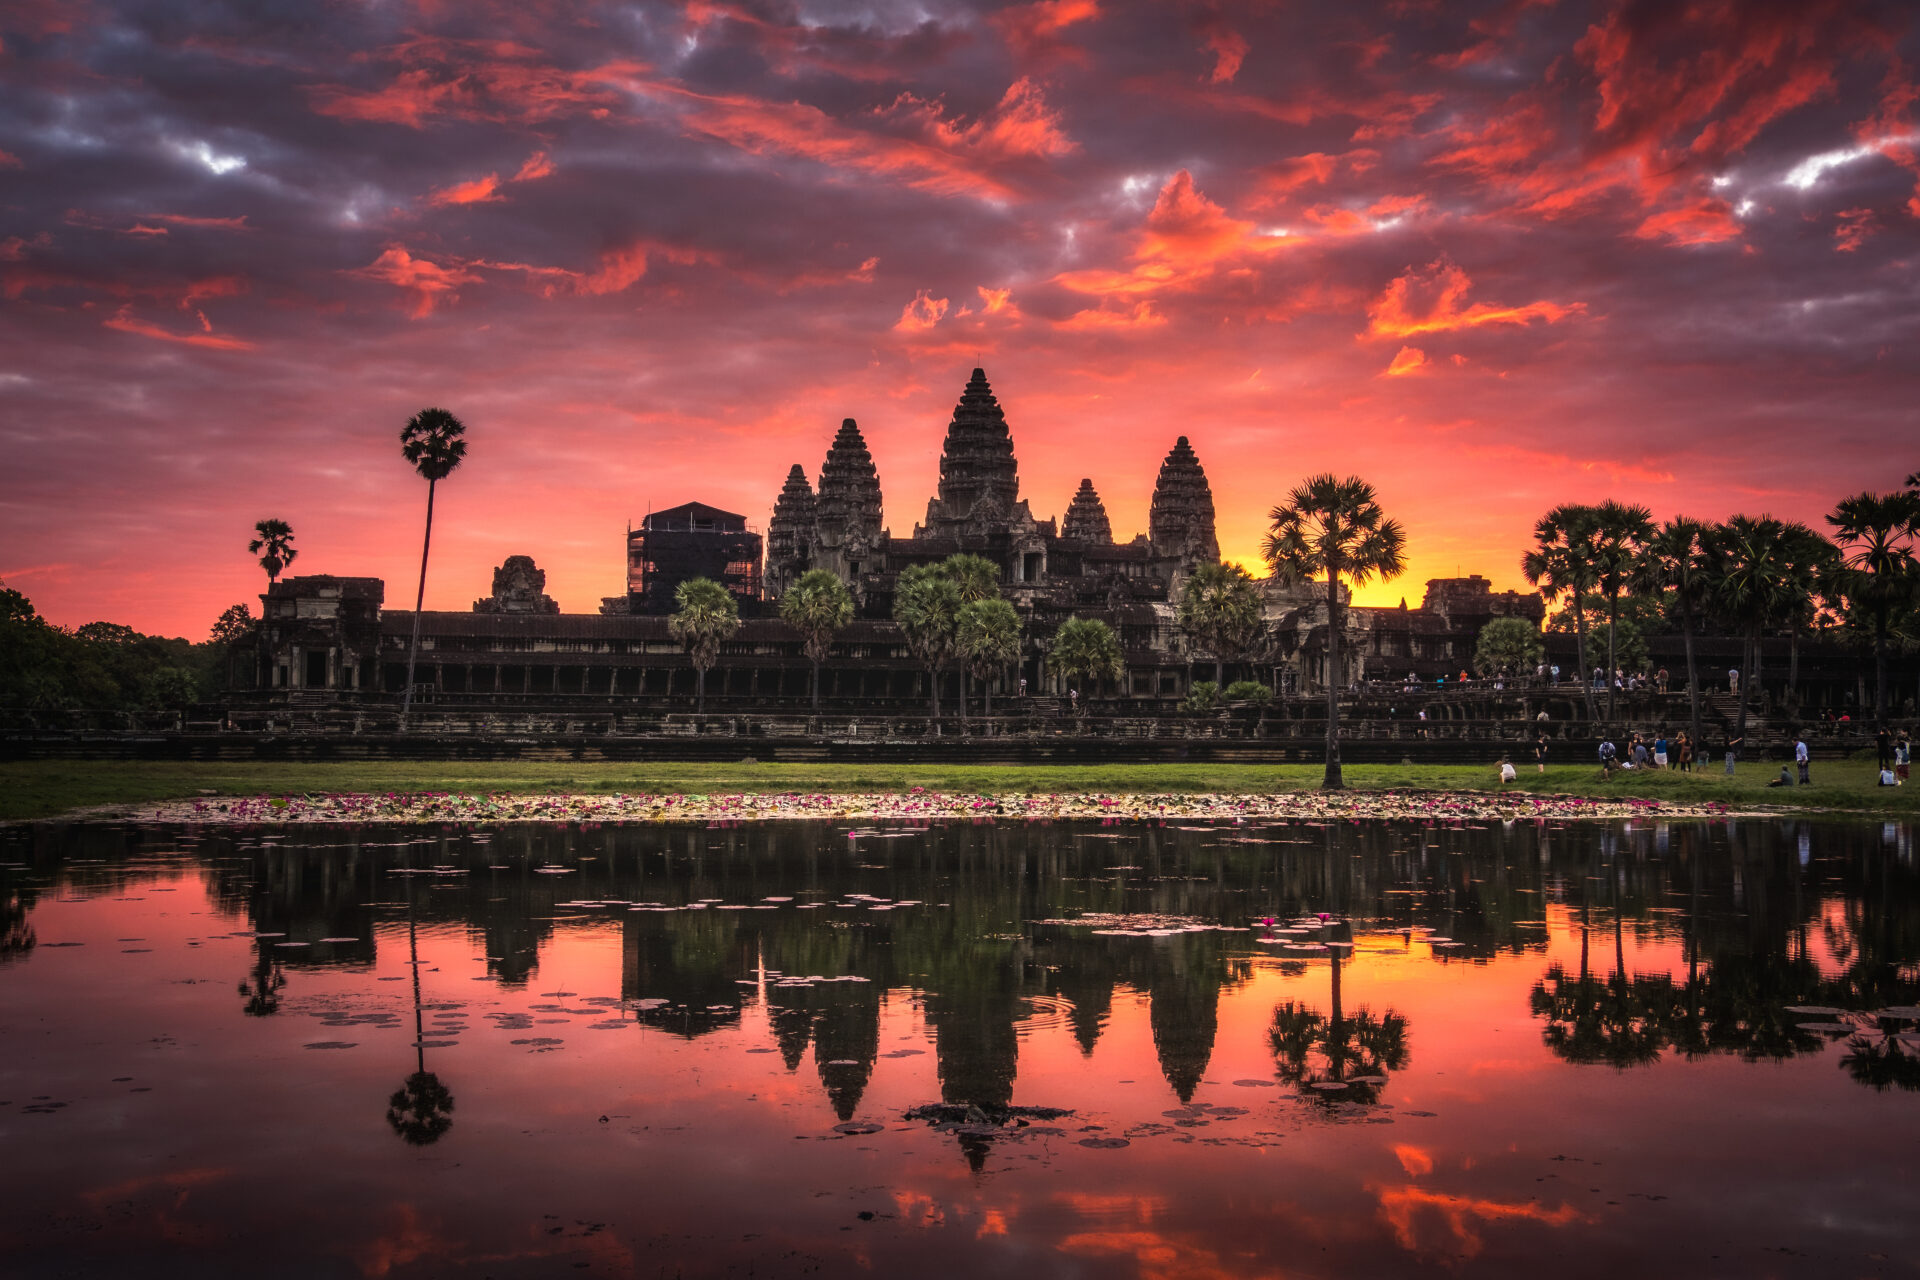 Beautiful sky at Angkor Wat, Siem Reap